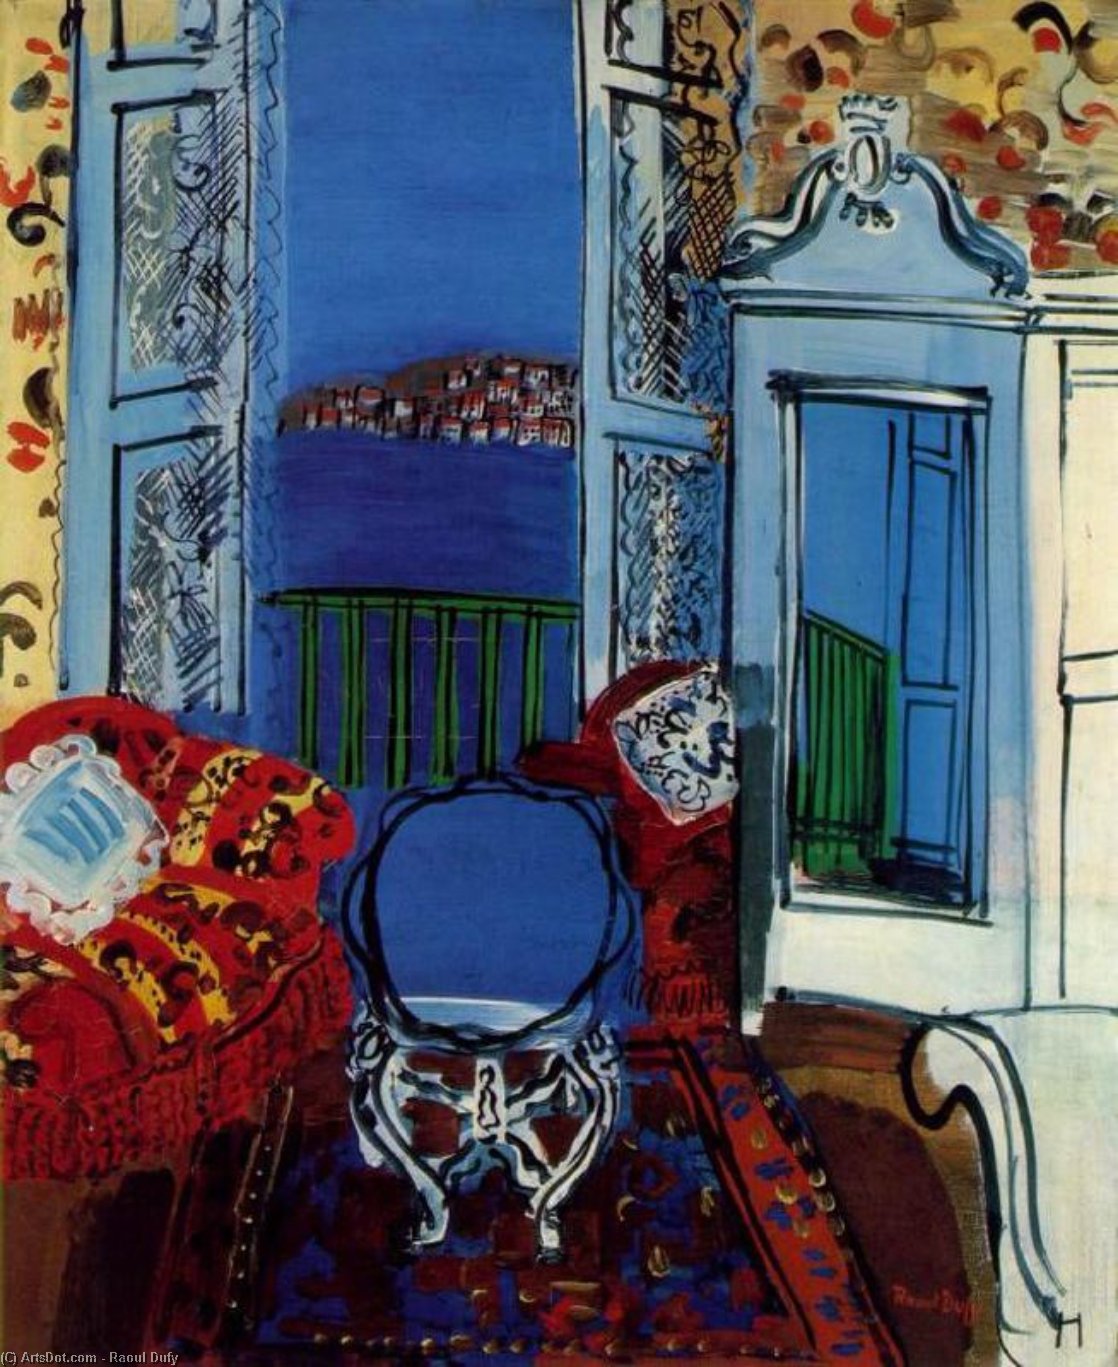 WikiOO.org - Encyclopedia of Fine Arts - Lukisan, Artwork Raoul Dufy - Open Window